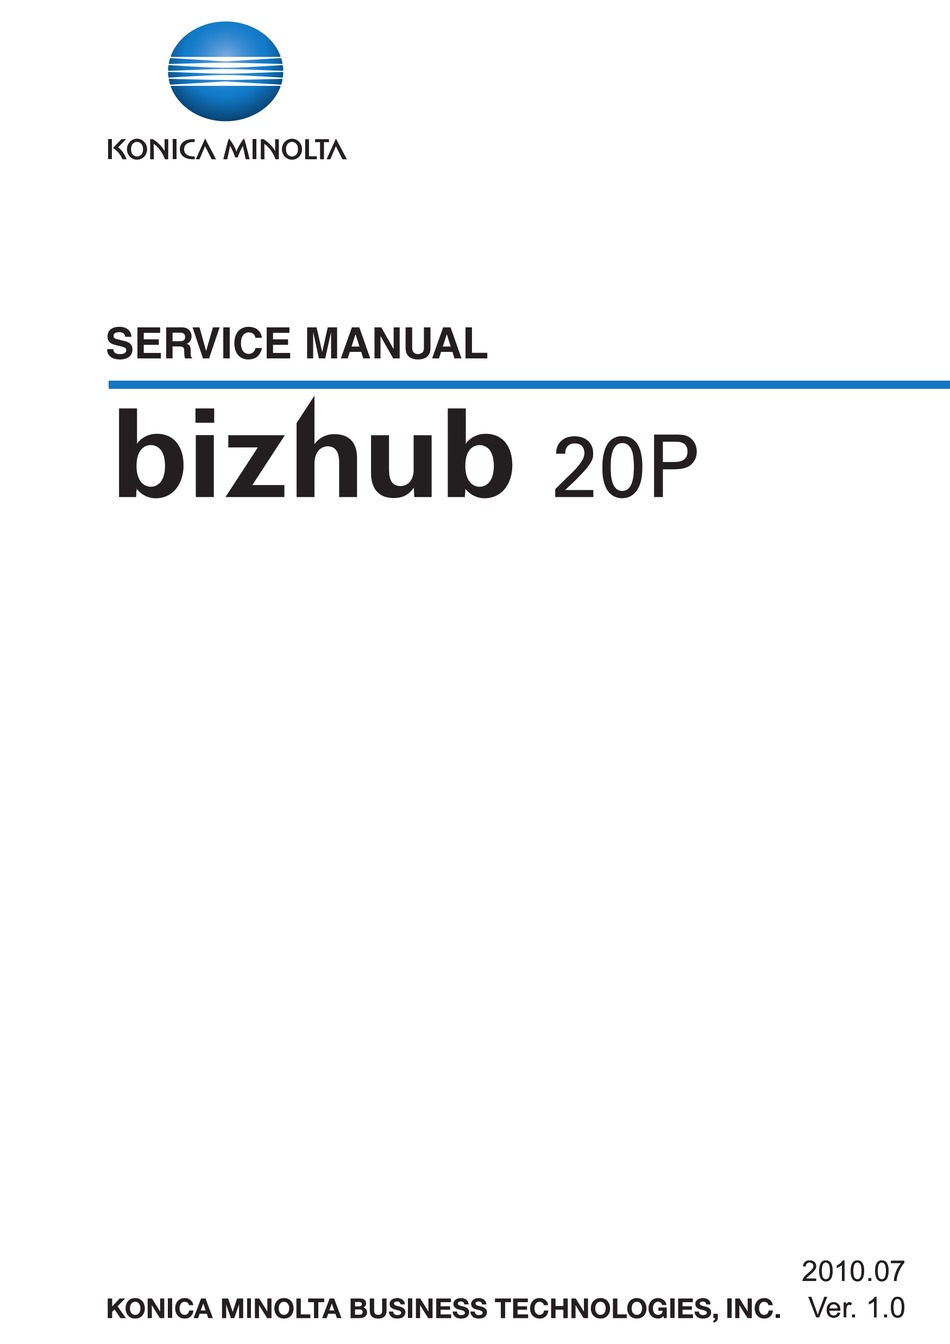 Konica Minolta Bizhub 20p Service Manual Pdf Download Manualslib